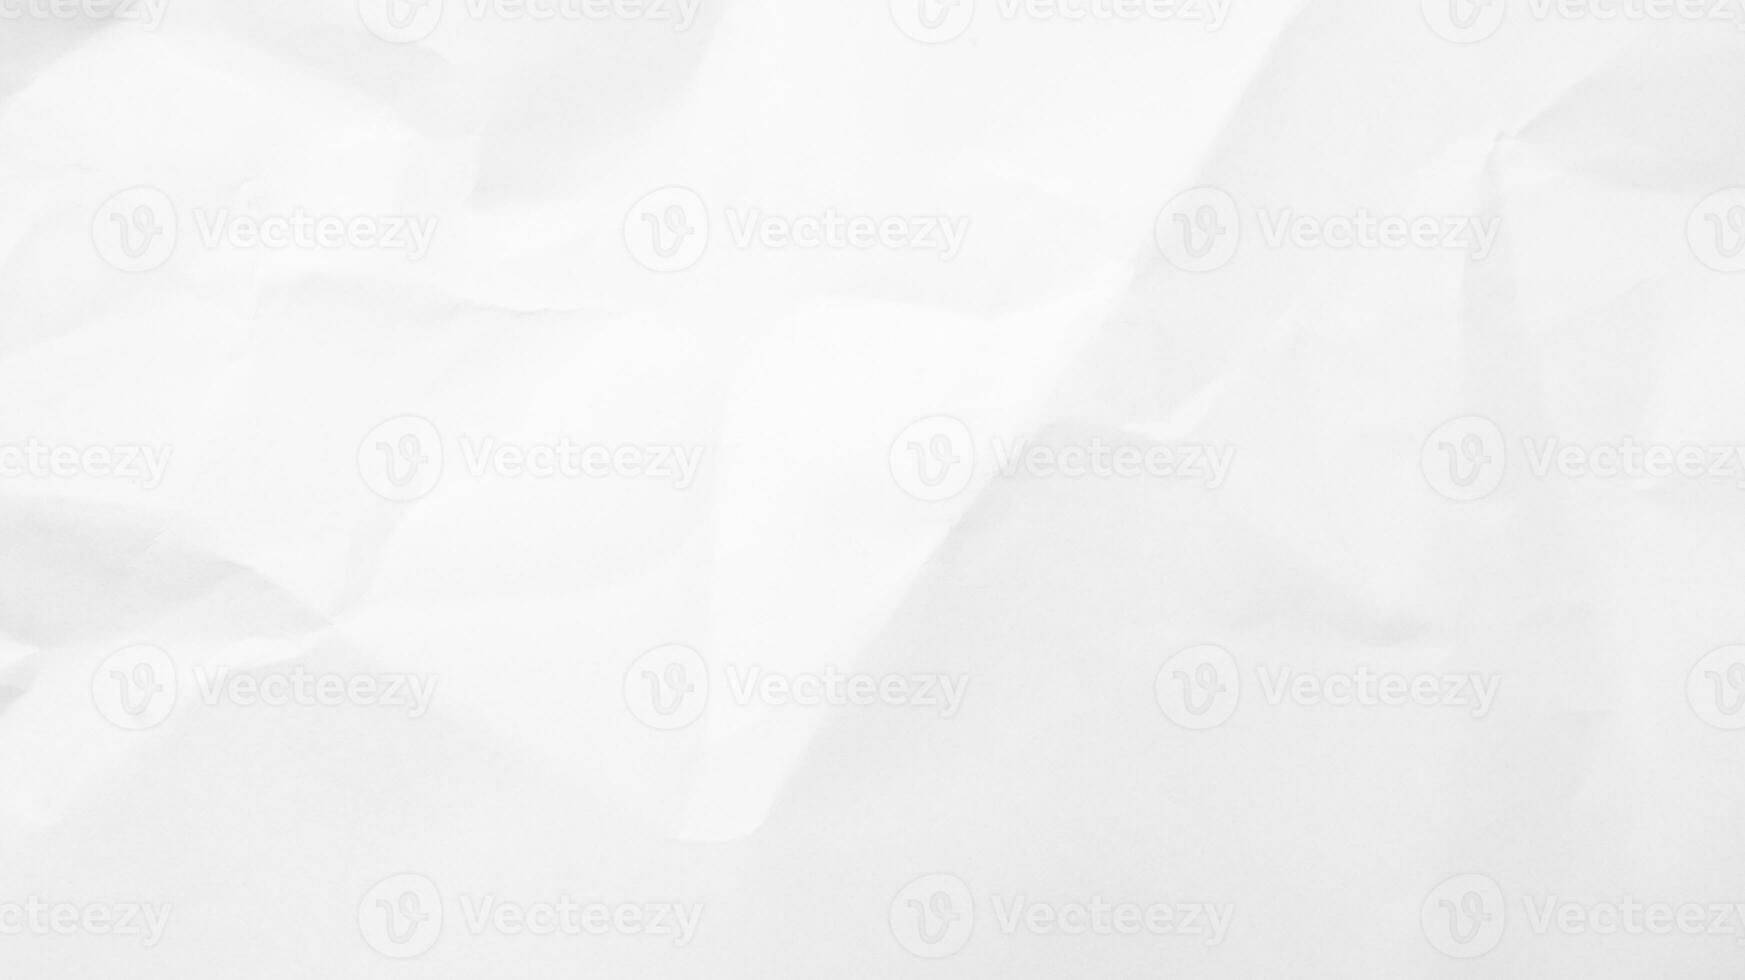 vit papper textur bakgrund. skrynkliga vit papper abstrakt form bakgrund med Plats papper återvinna för text foto